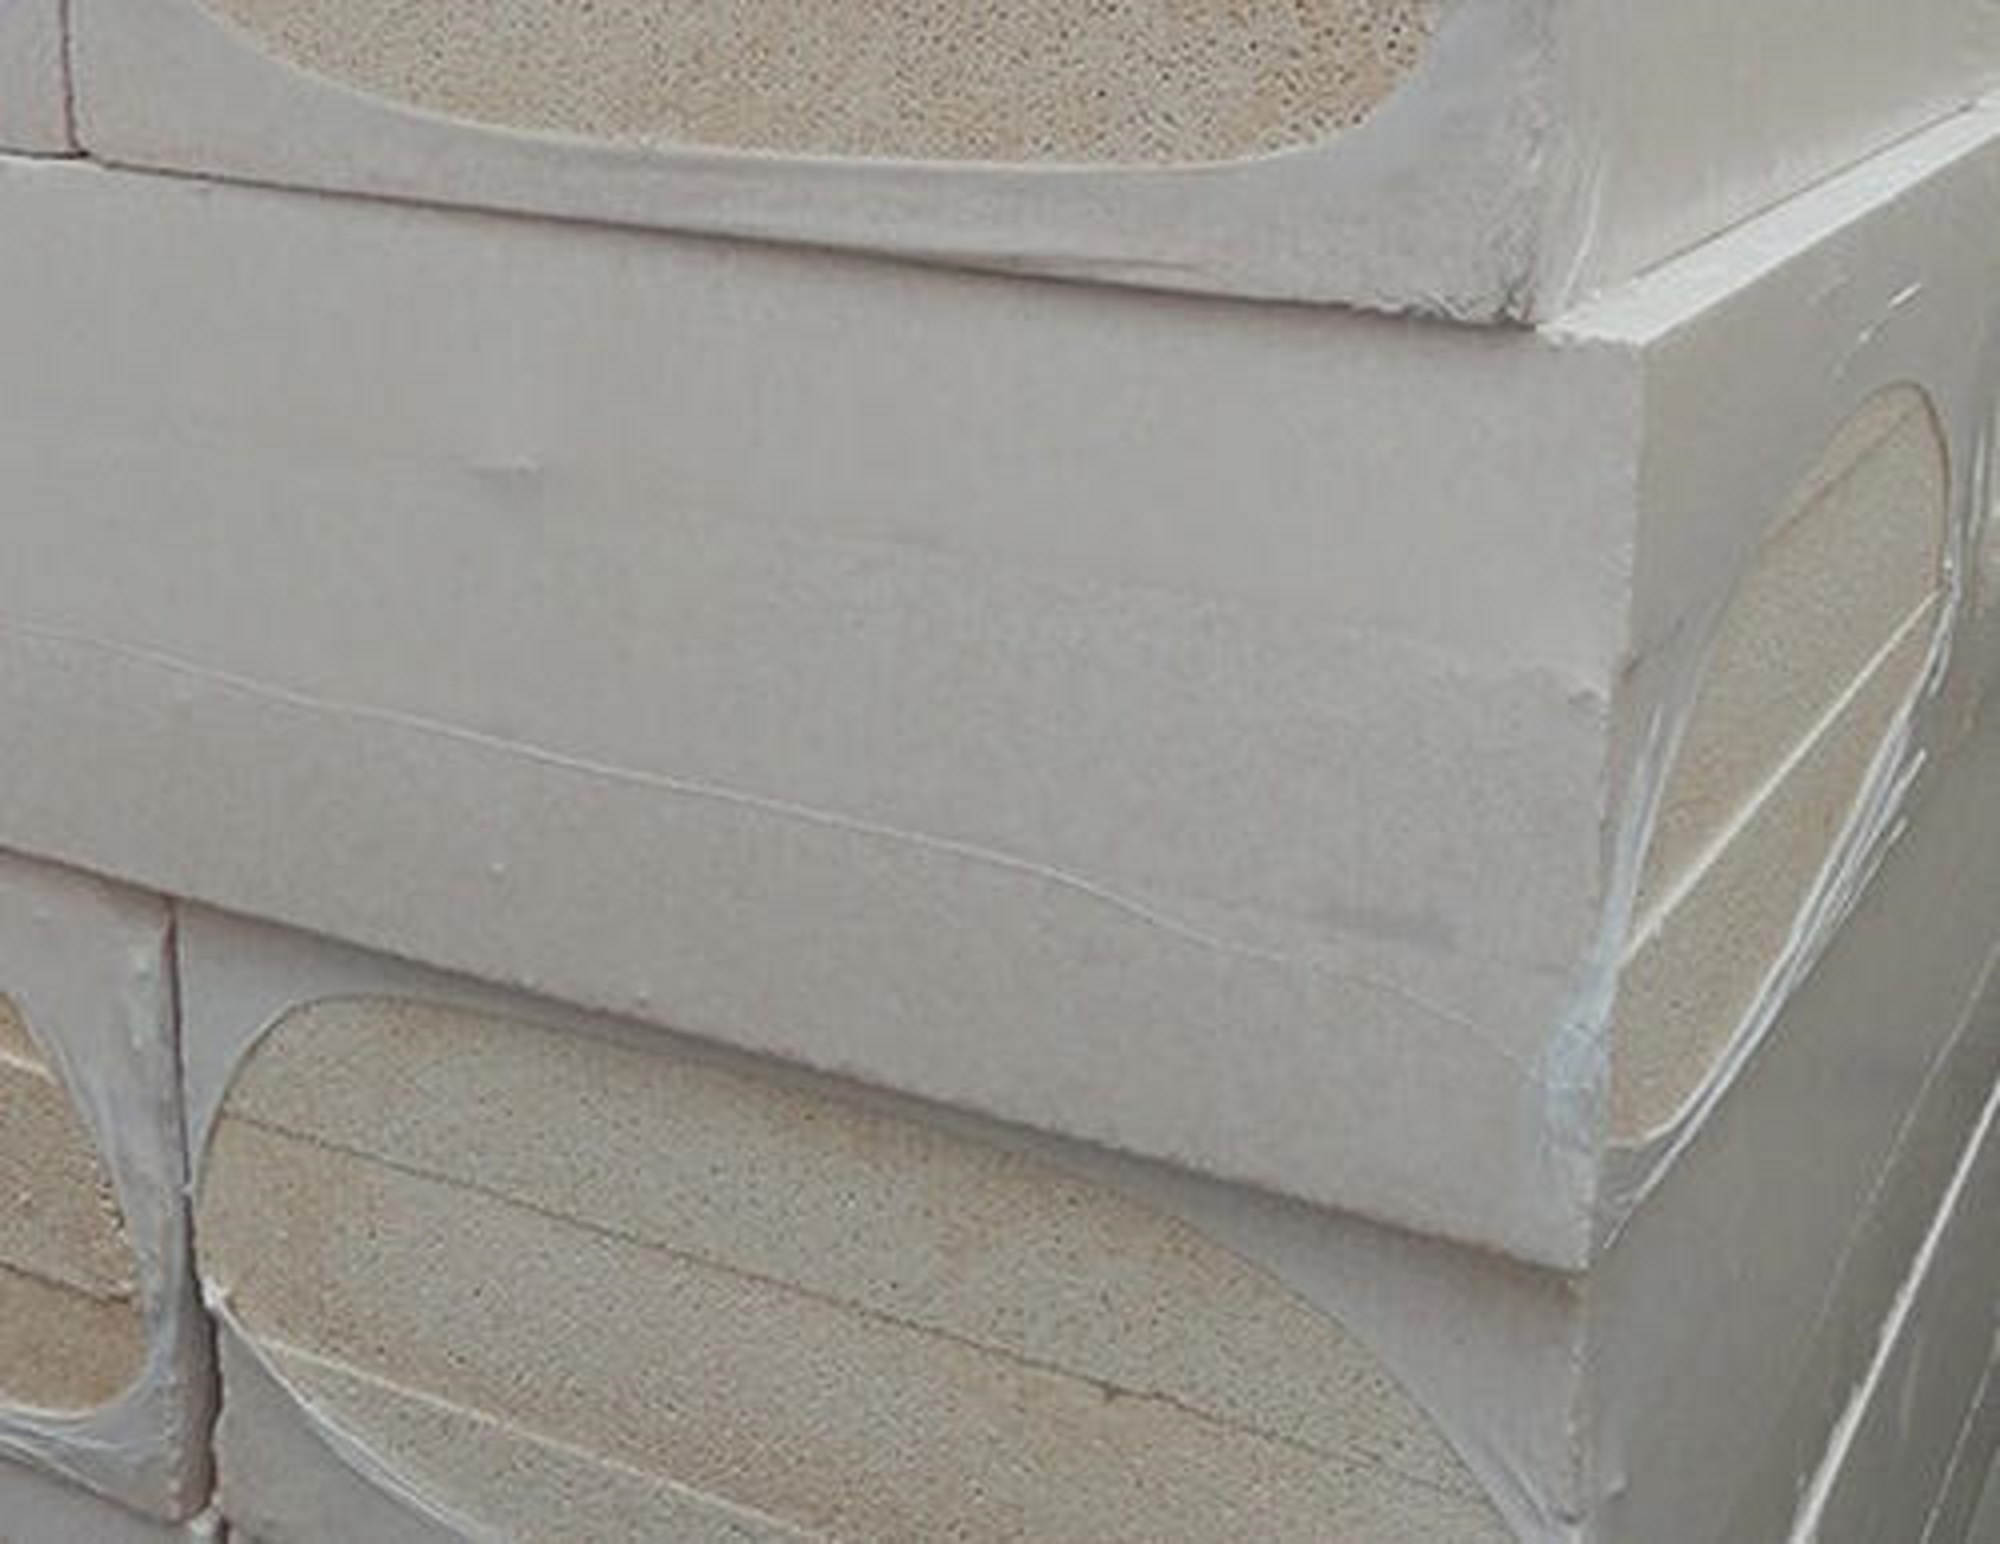 复合酚醛板 聚合物聚苯板 玉田市场批发价格 泡沫玻璃 防火等级高 外墙岩棉板 聚合聚苯板4